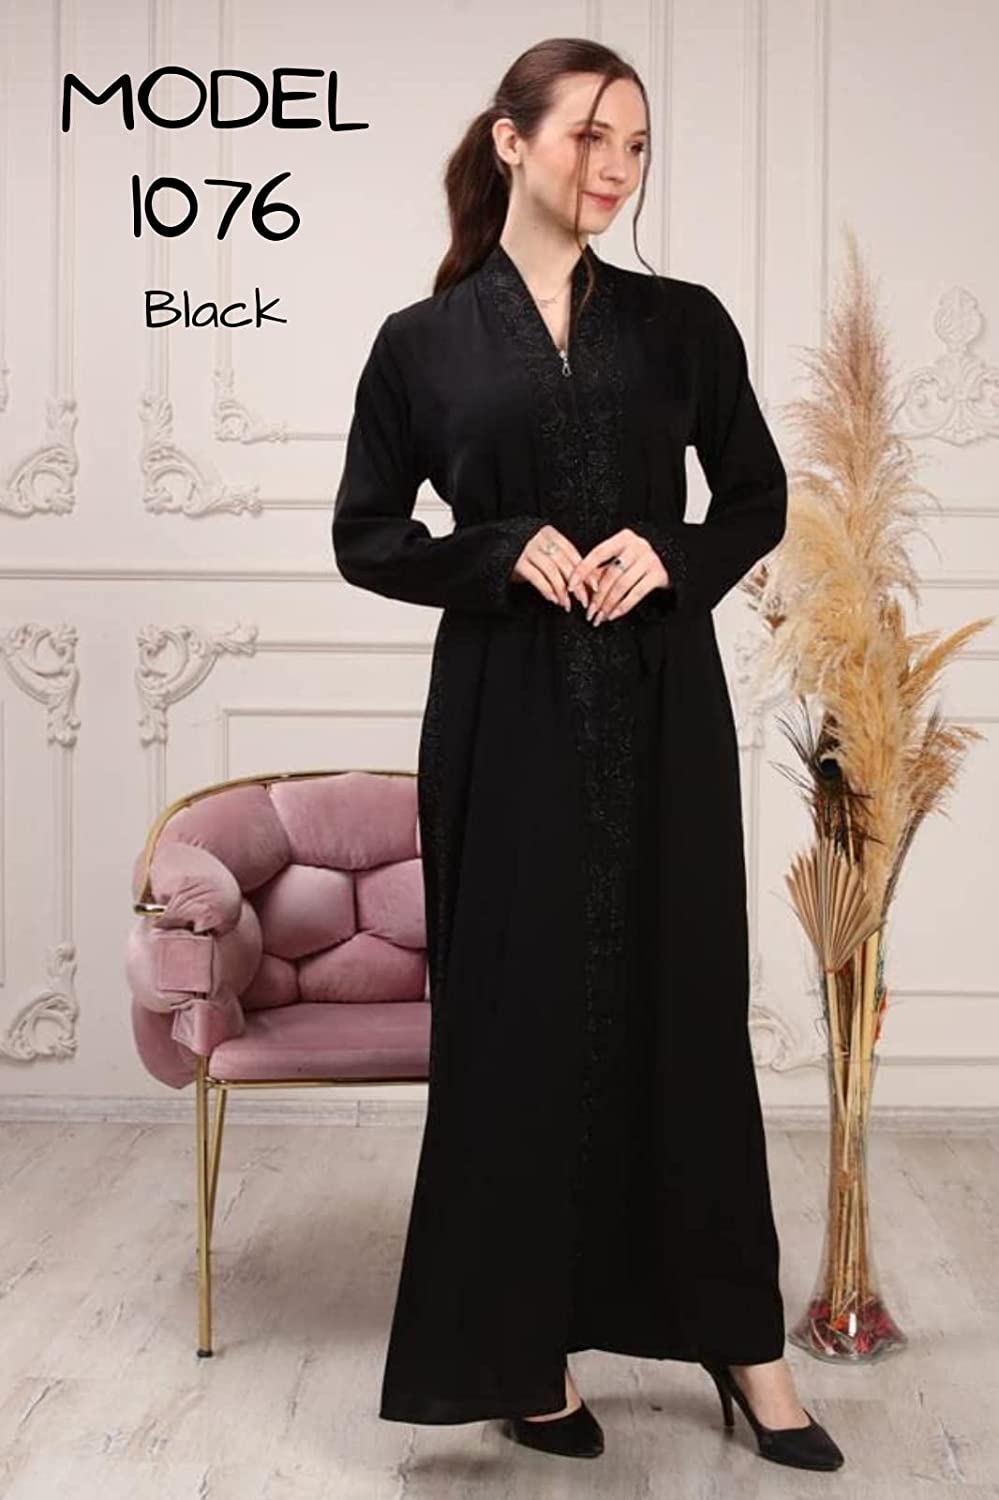 Marwa Fashion Abayas for Women Muslim - Comfortable Arabic Abaya Made from Nada Dubai/Forsan Silk with Beautiful Embroidery